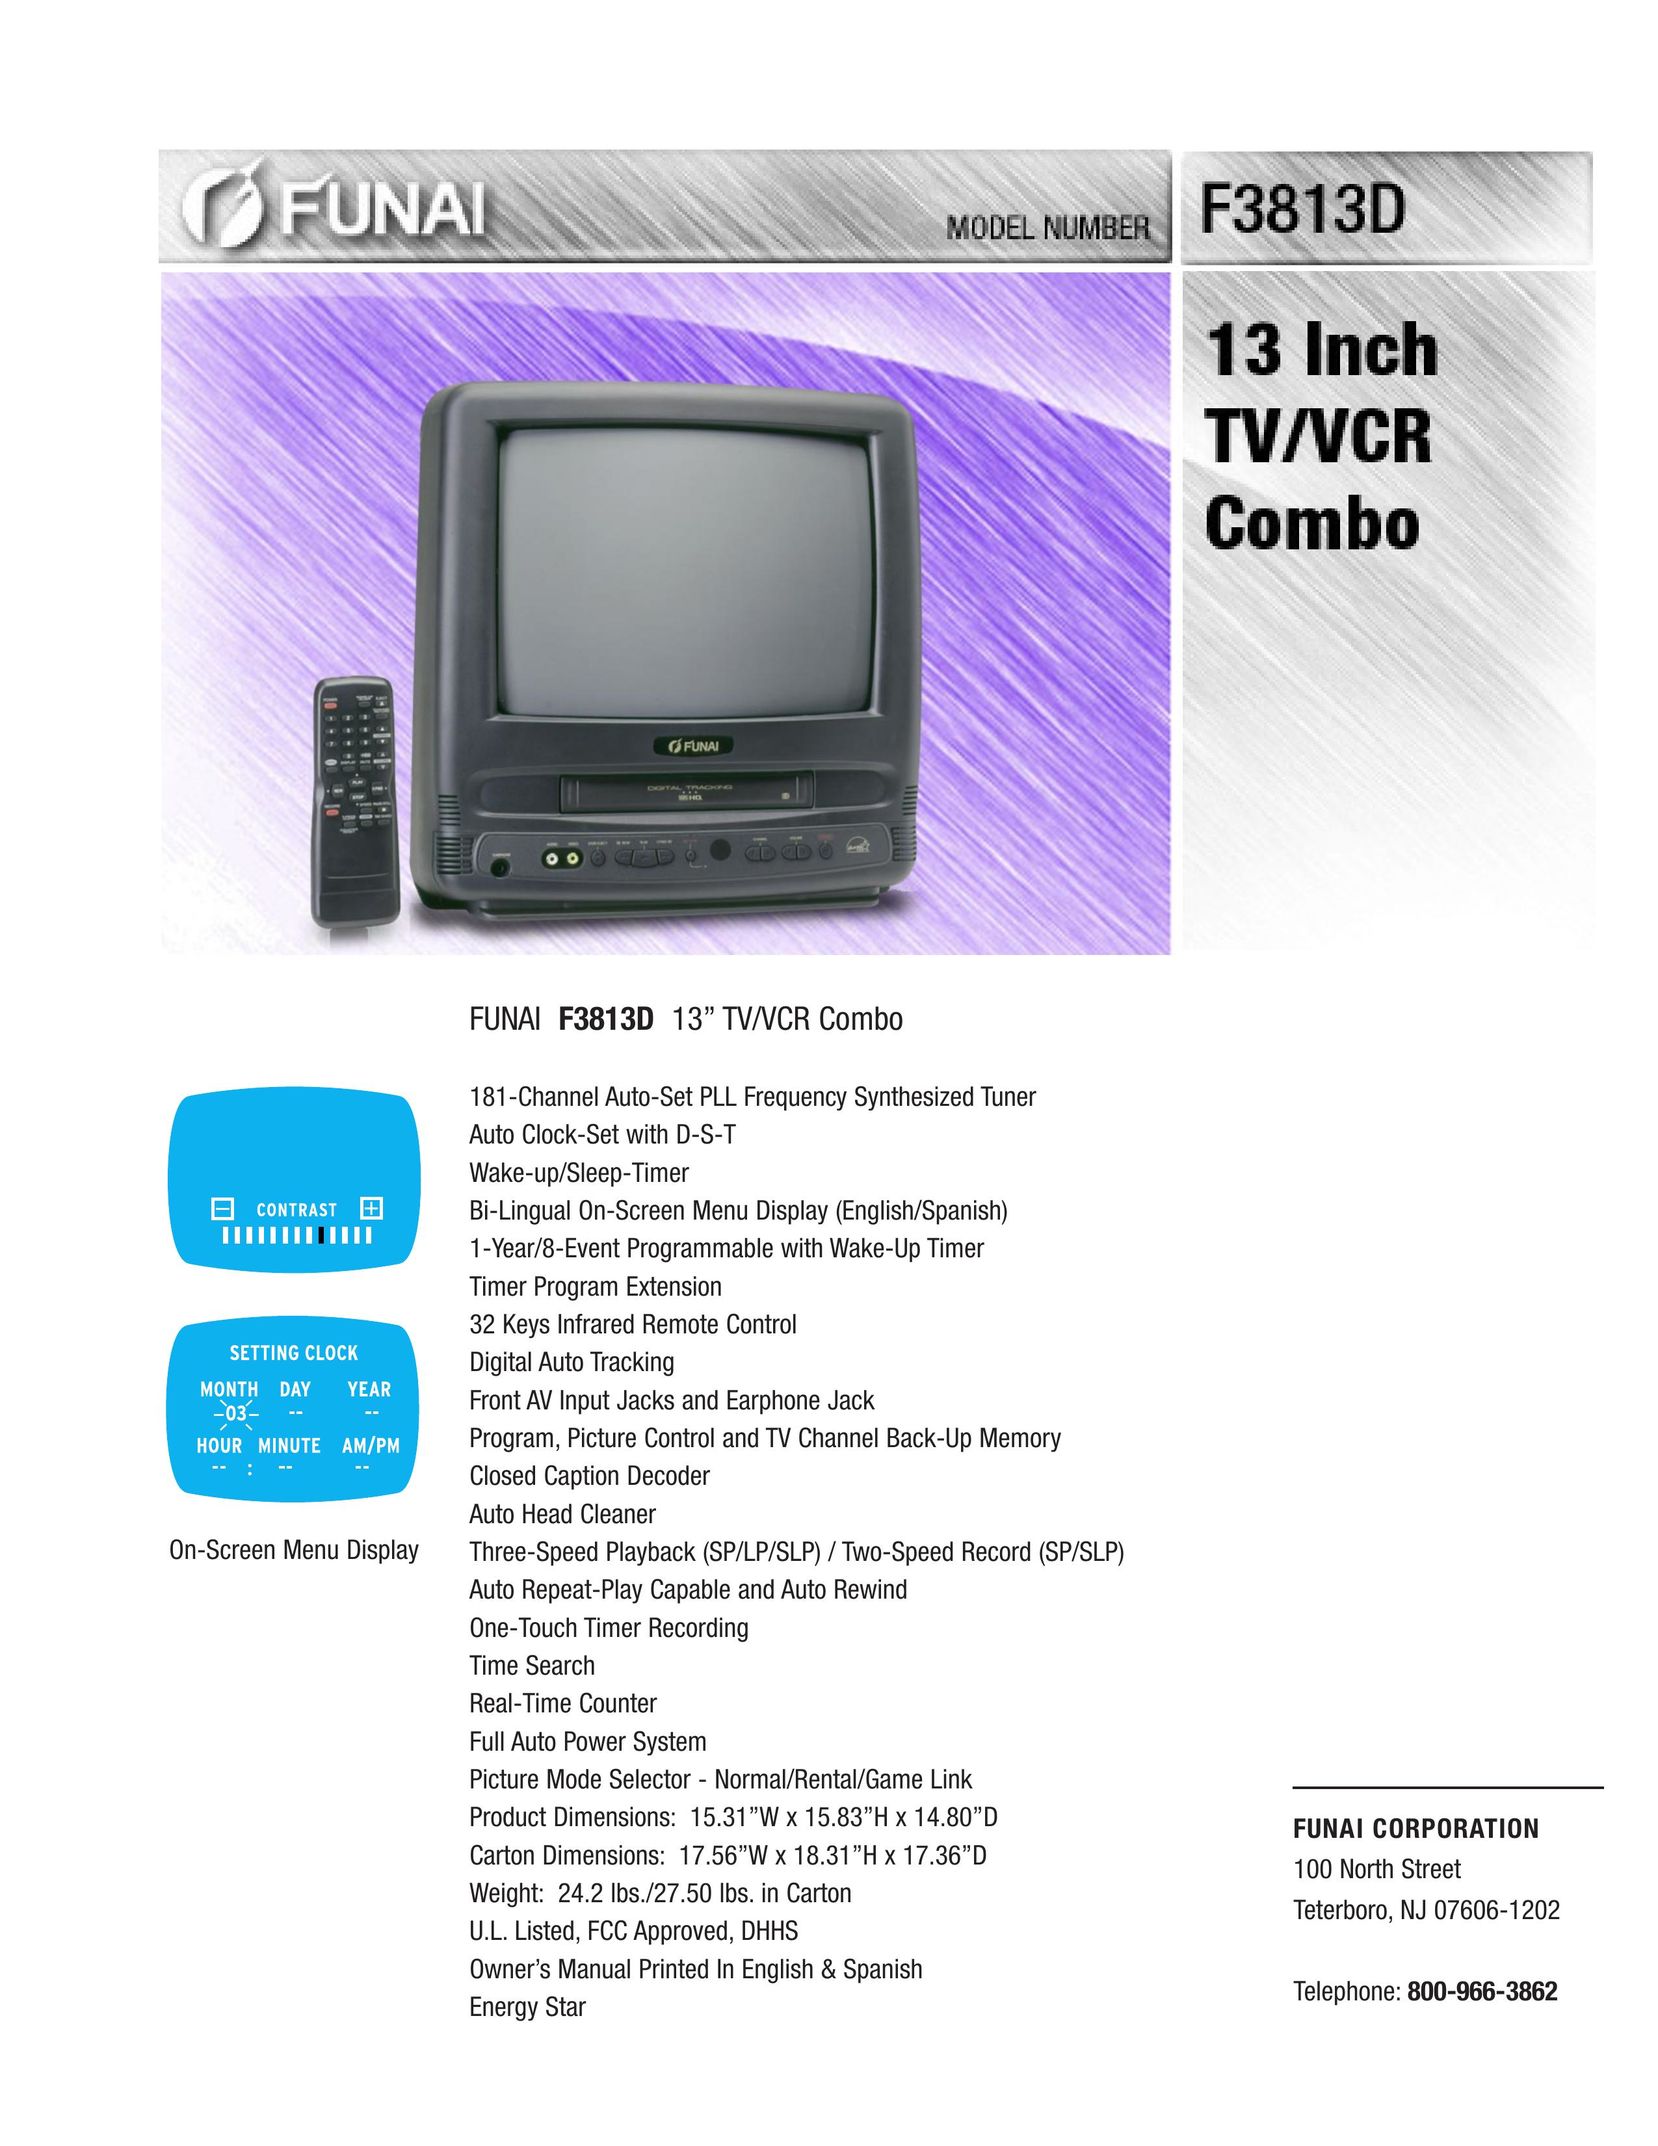 FUNAI F3813D TV VCR Combo User Manual